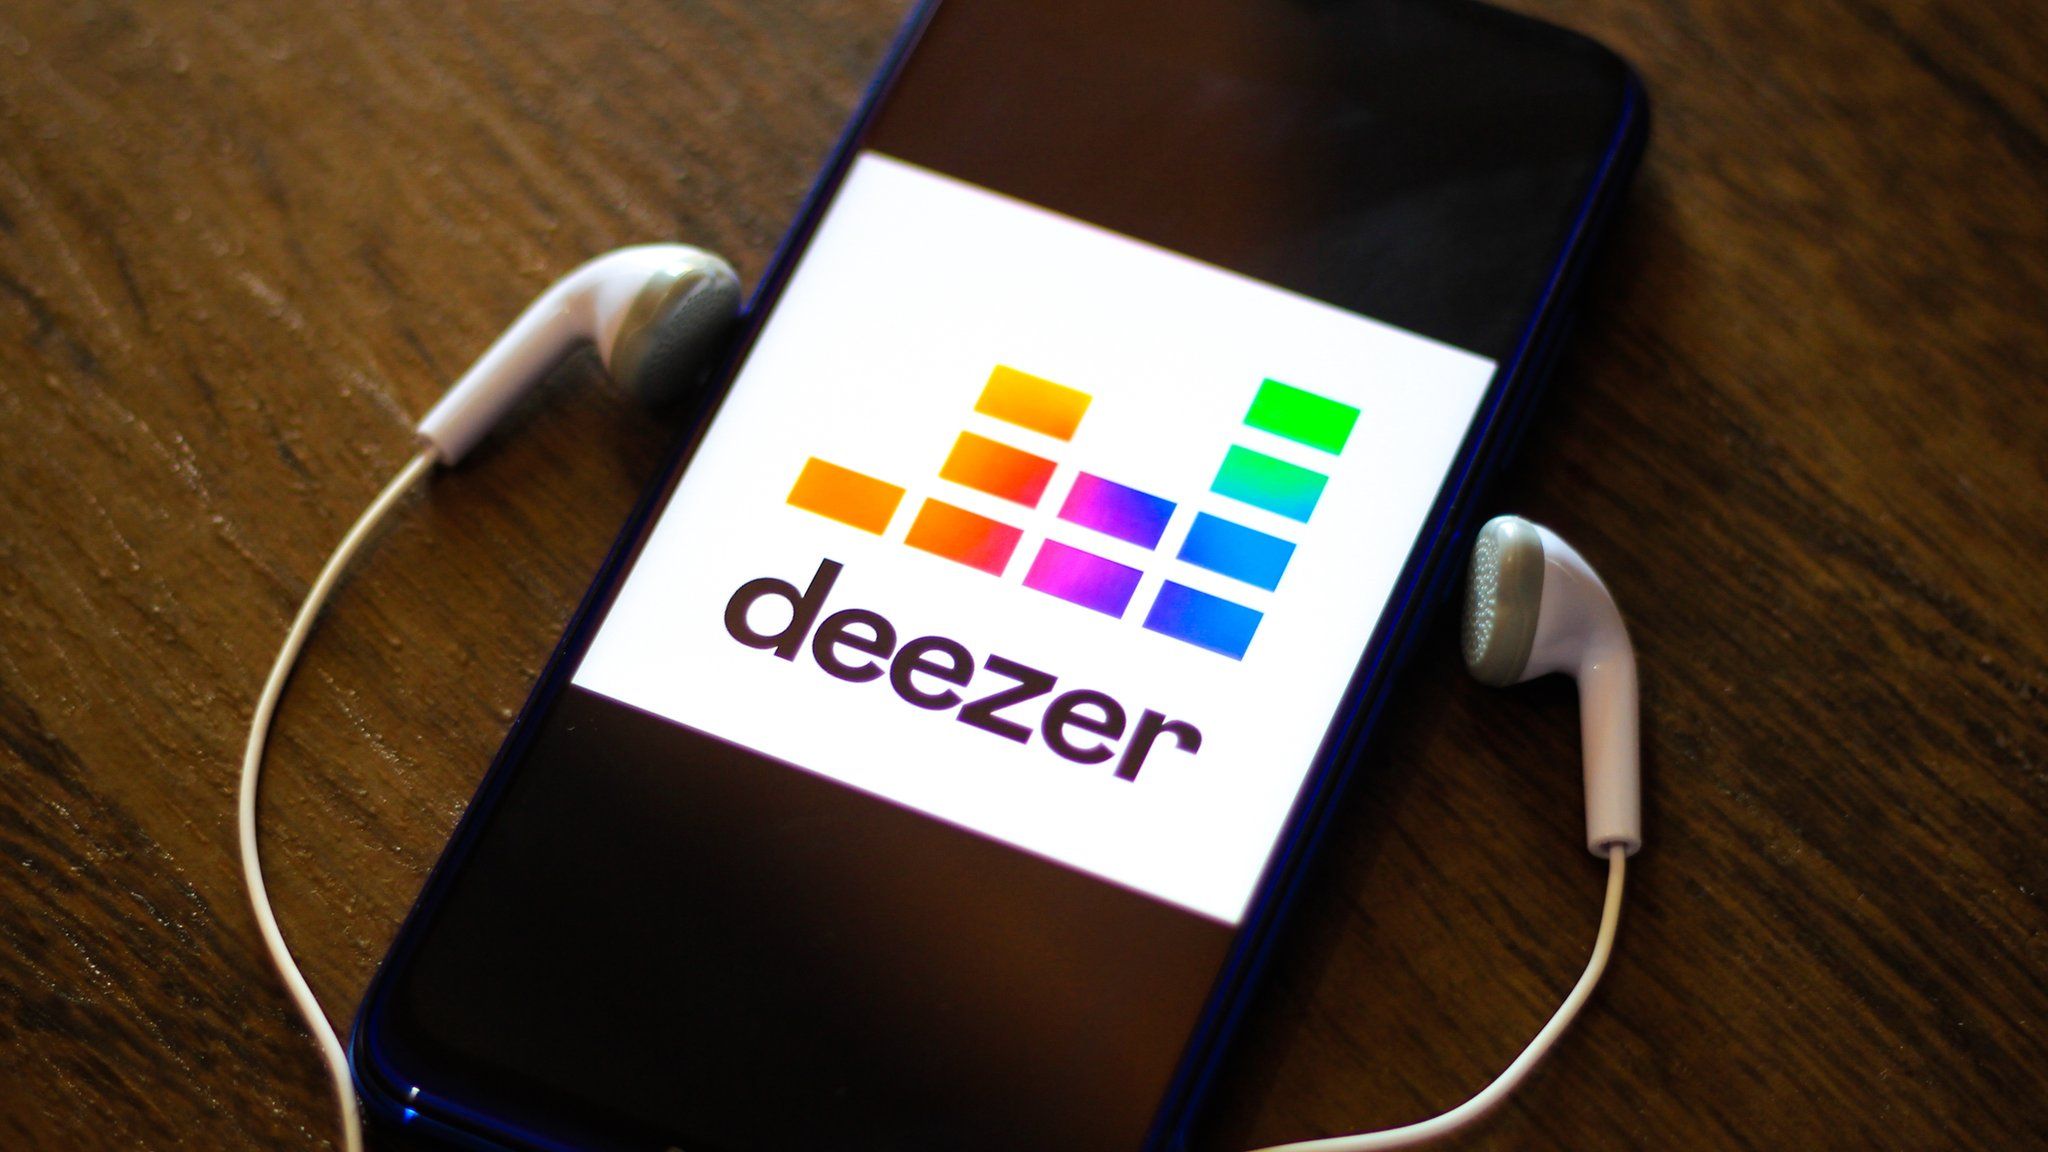 Deezer app on a smartphone